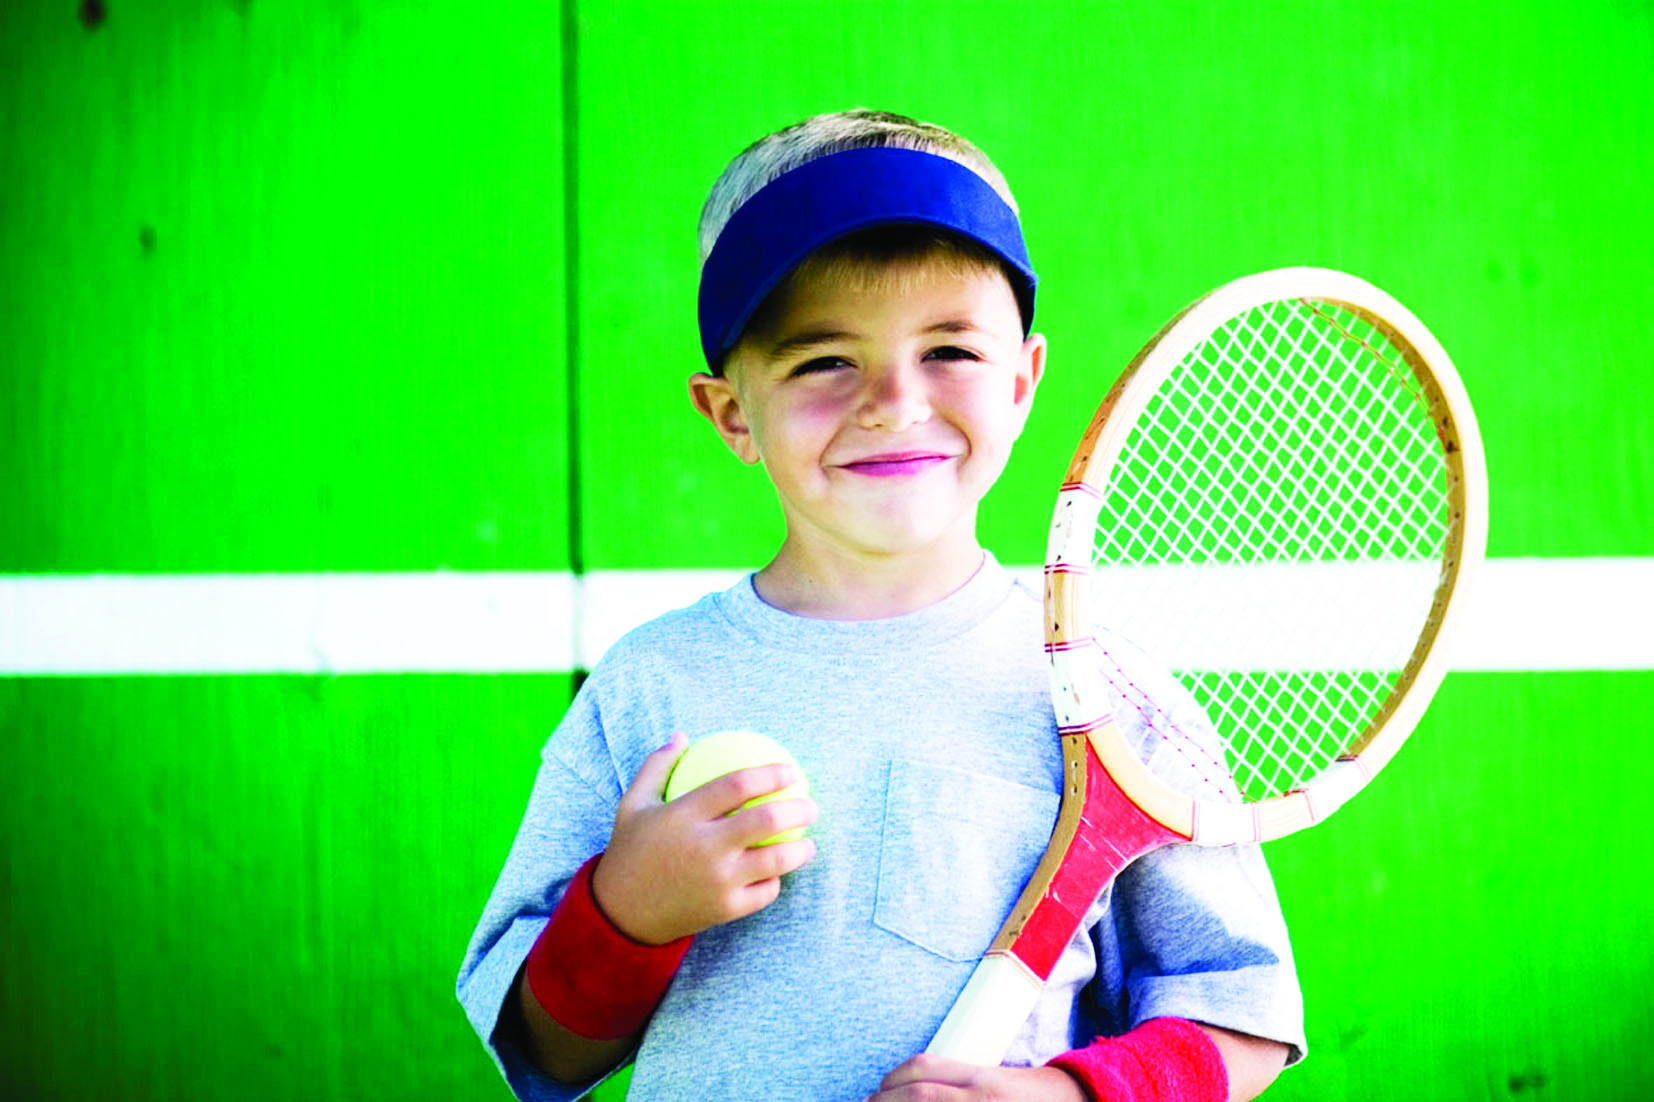 الرياضة في الطفولة تحمي القلب